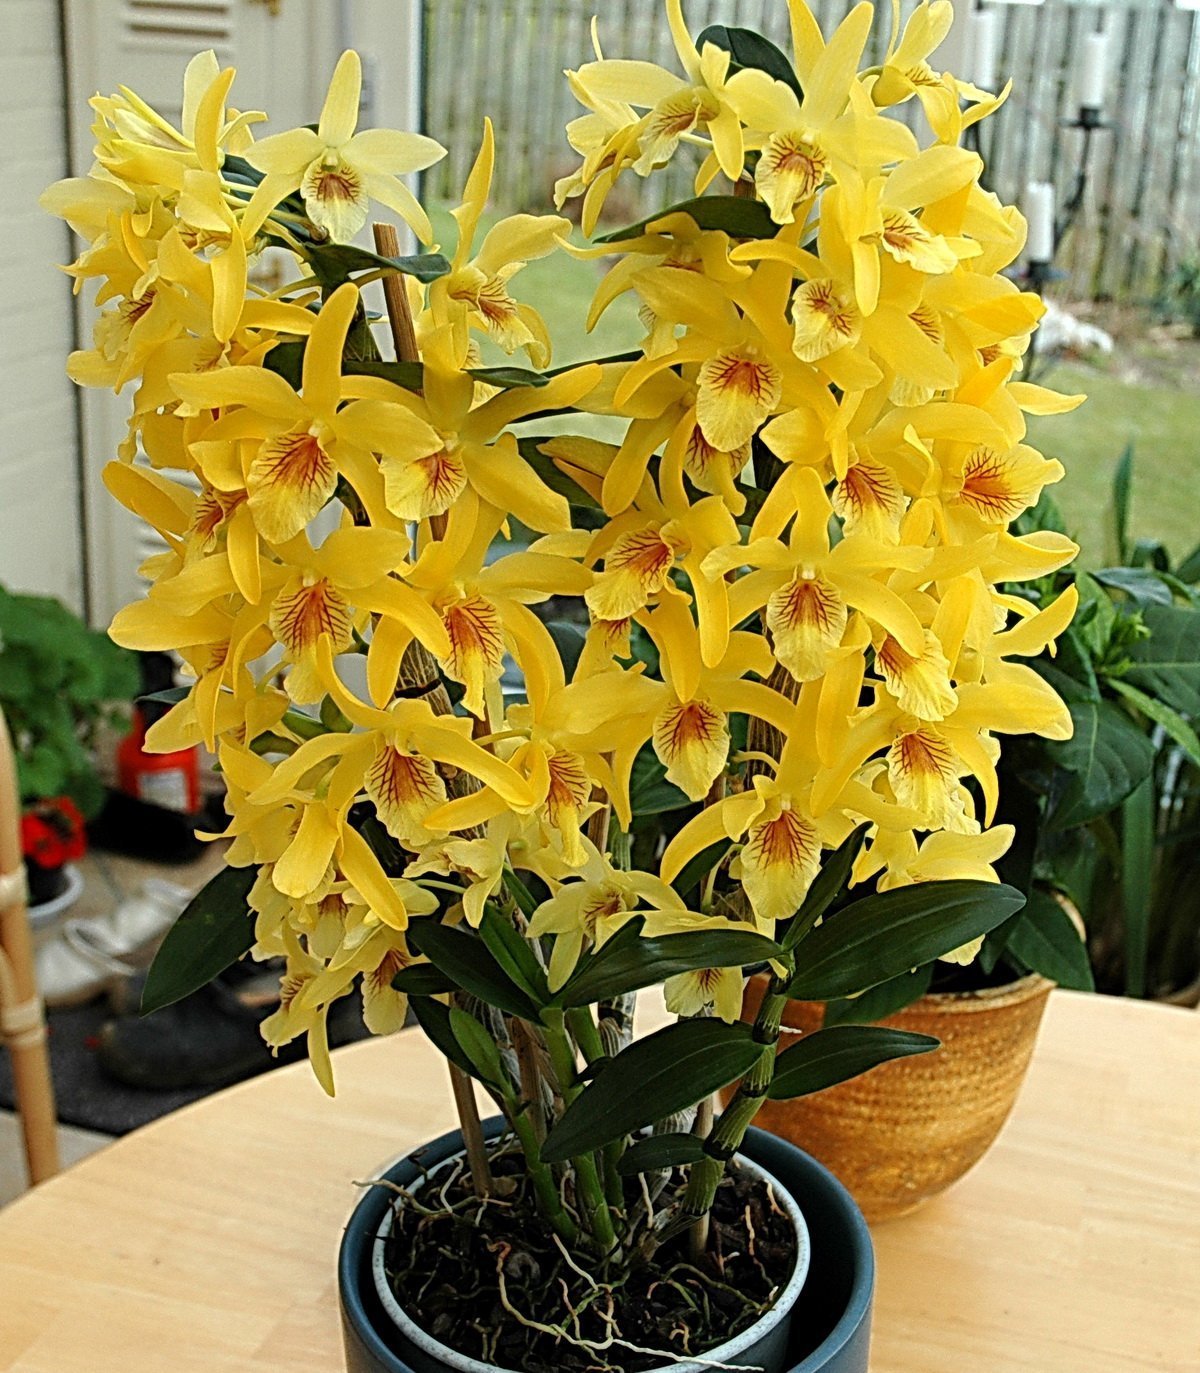 Орхидея Дендробиум Нобиле. Орхидея Dendrobium Nobile. Орхидея дегдробиум набухла. Цветок Dendrobium Nobile. Дендробиум нобиле купить